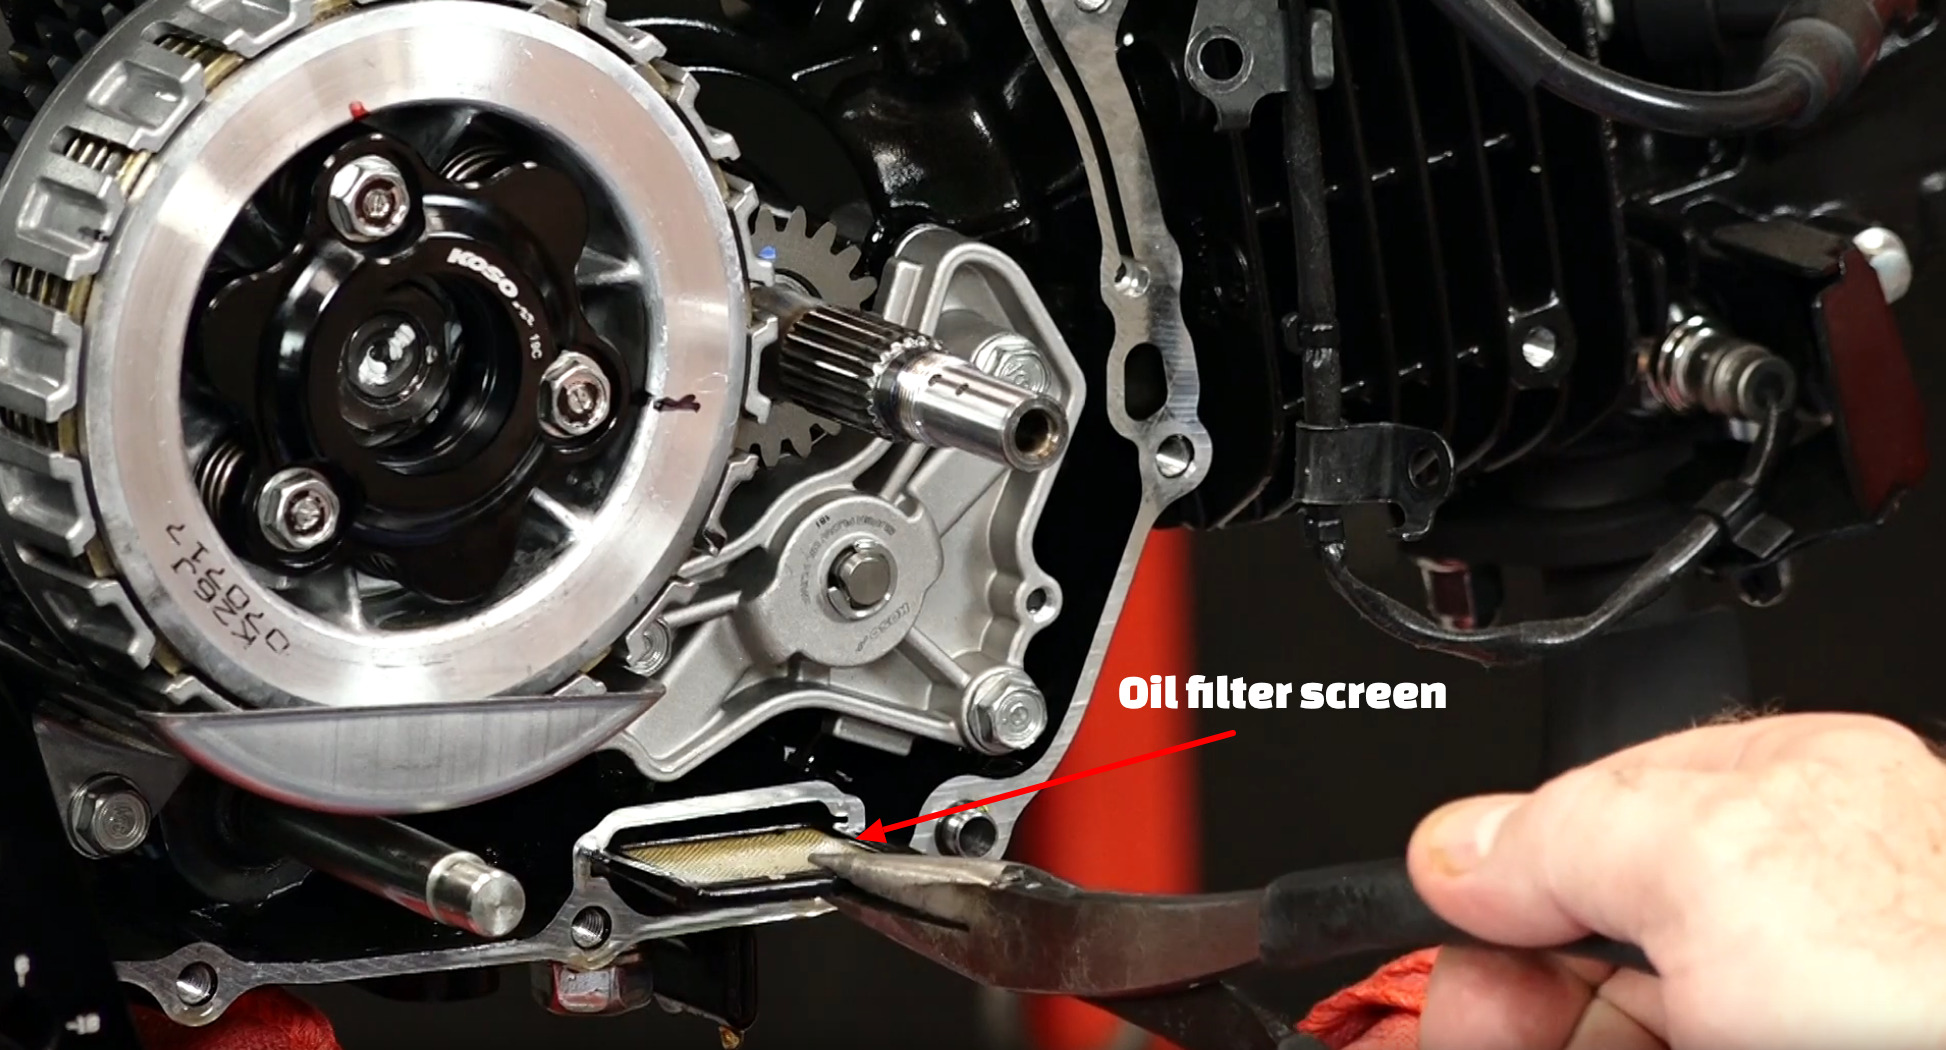 Honda Grom oil filter screen